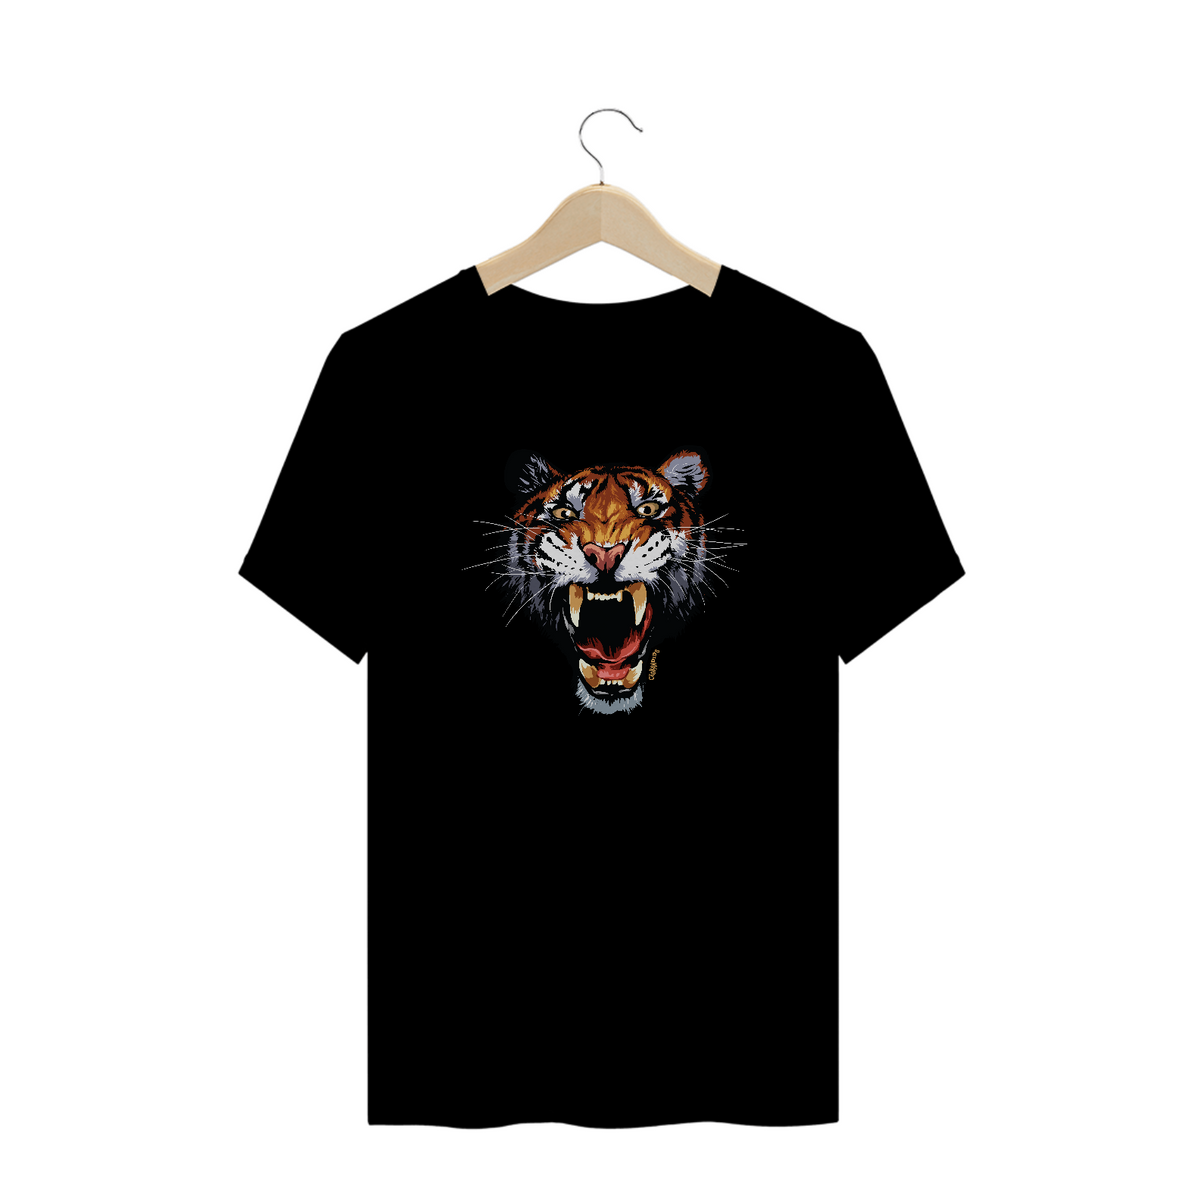 Nome do produto: Camiseta Plus Size Tigre - Modelo 1